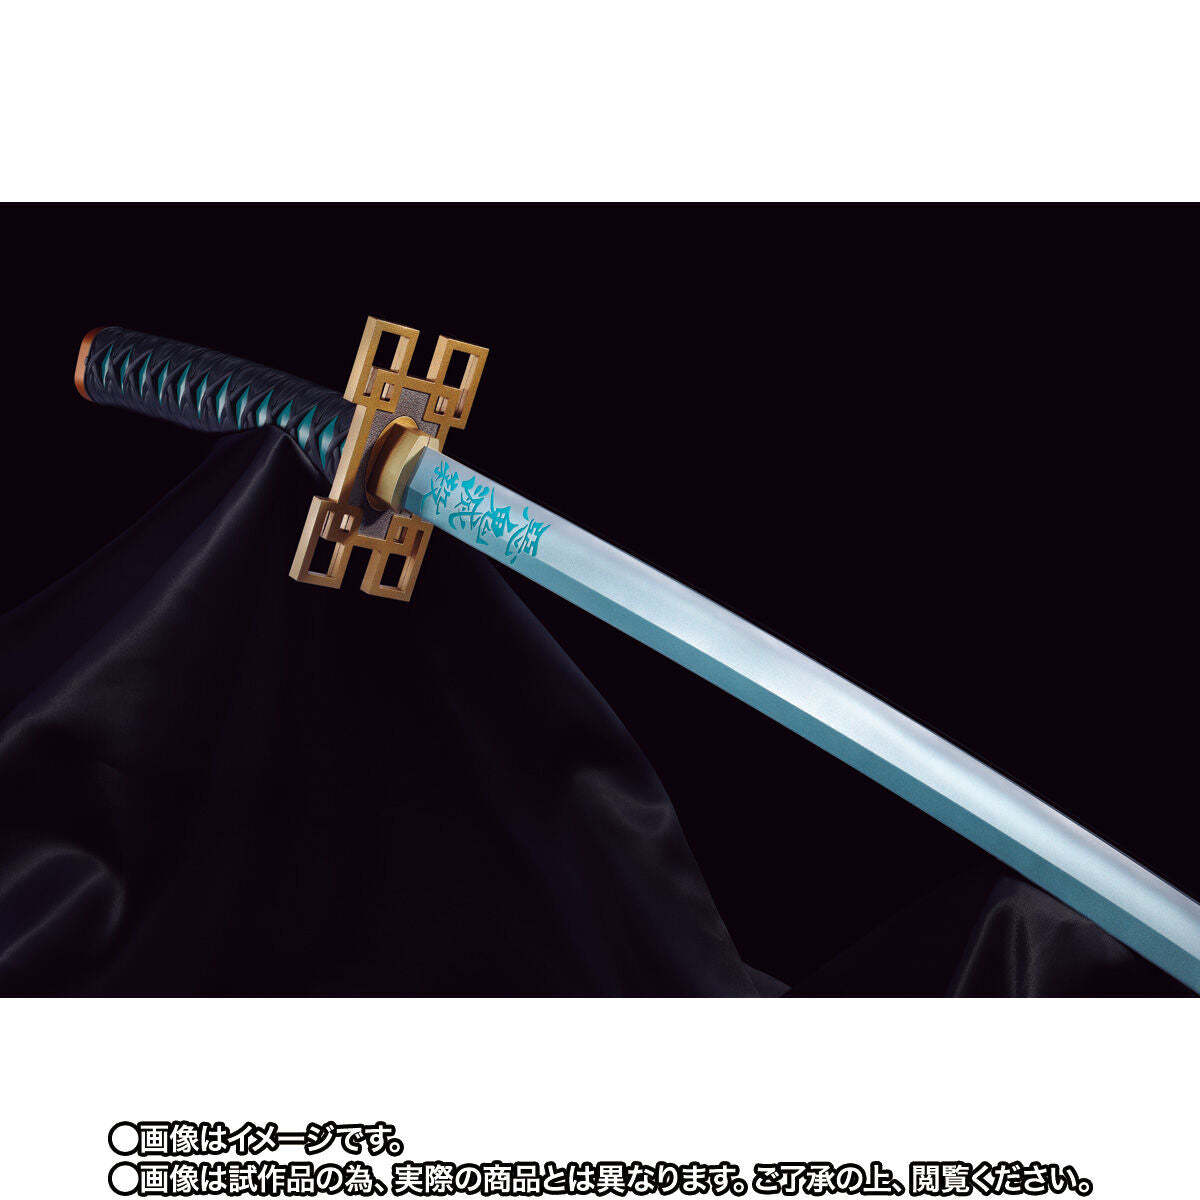 Demon Slayer Proplica Nichirin Sword (Muichiro Tokito)